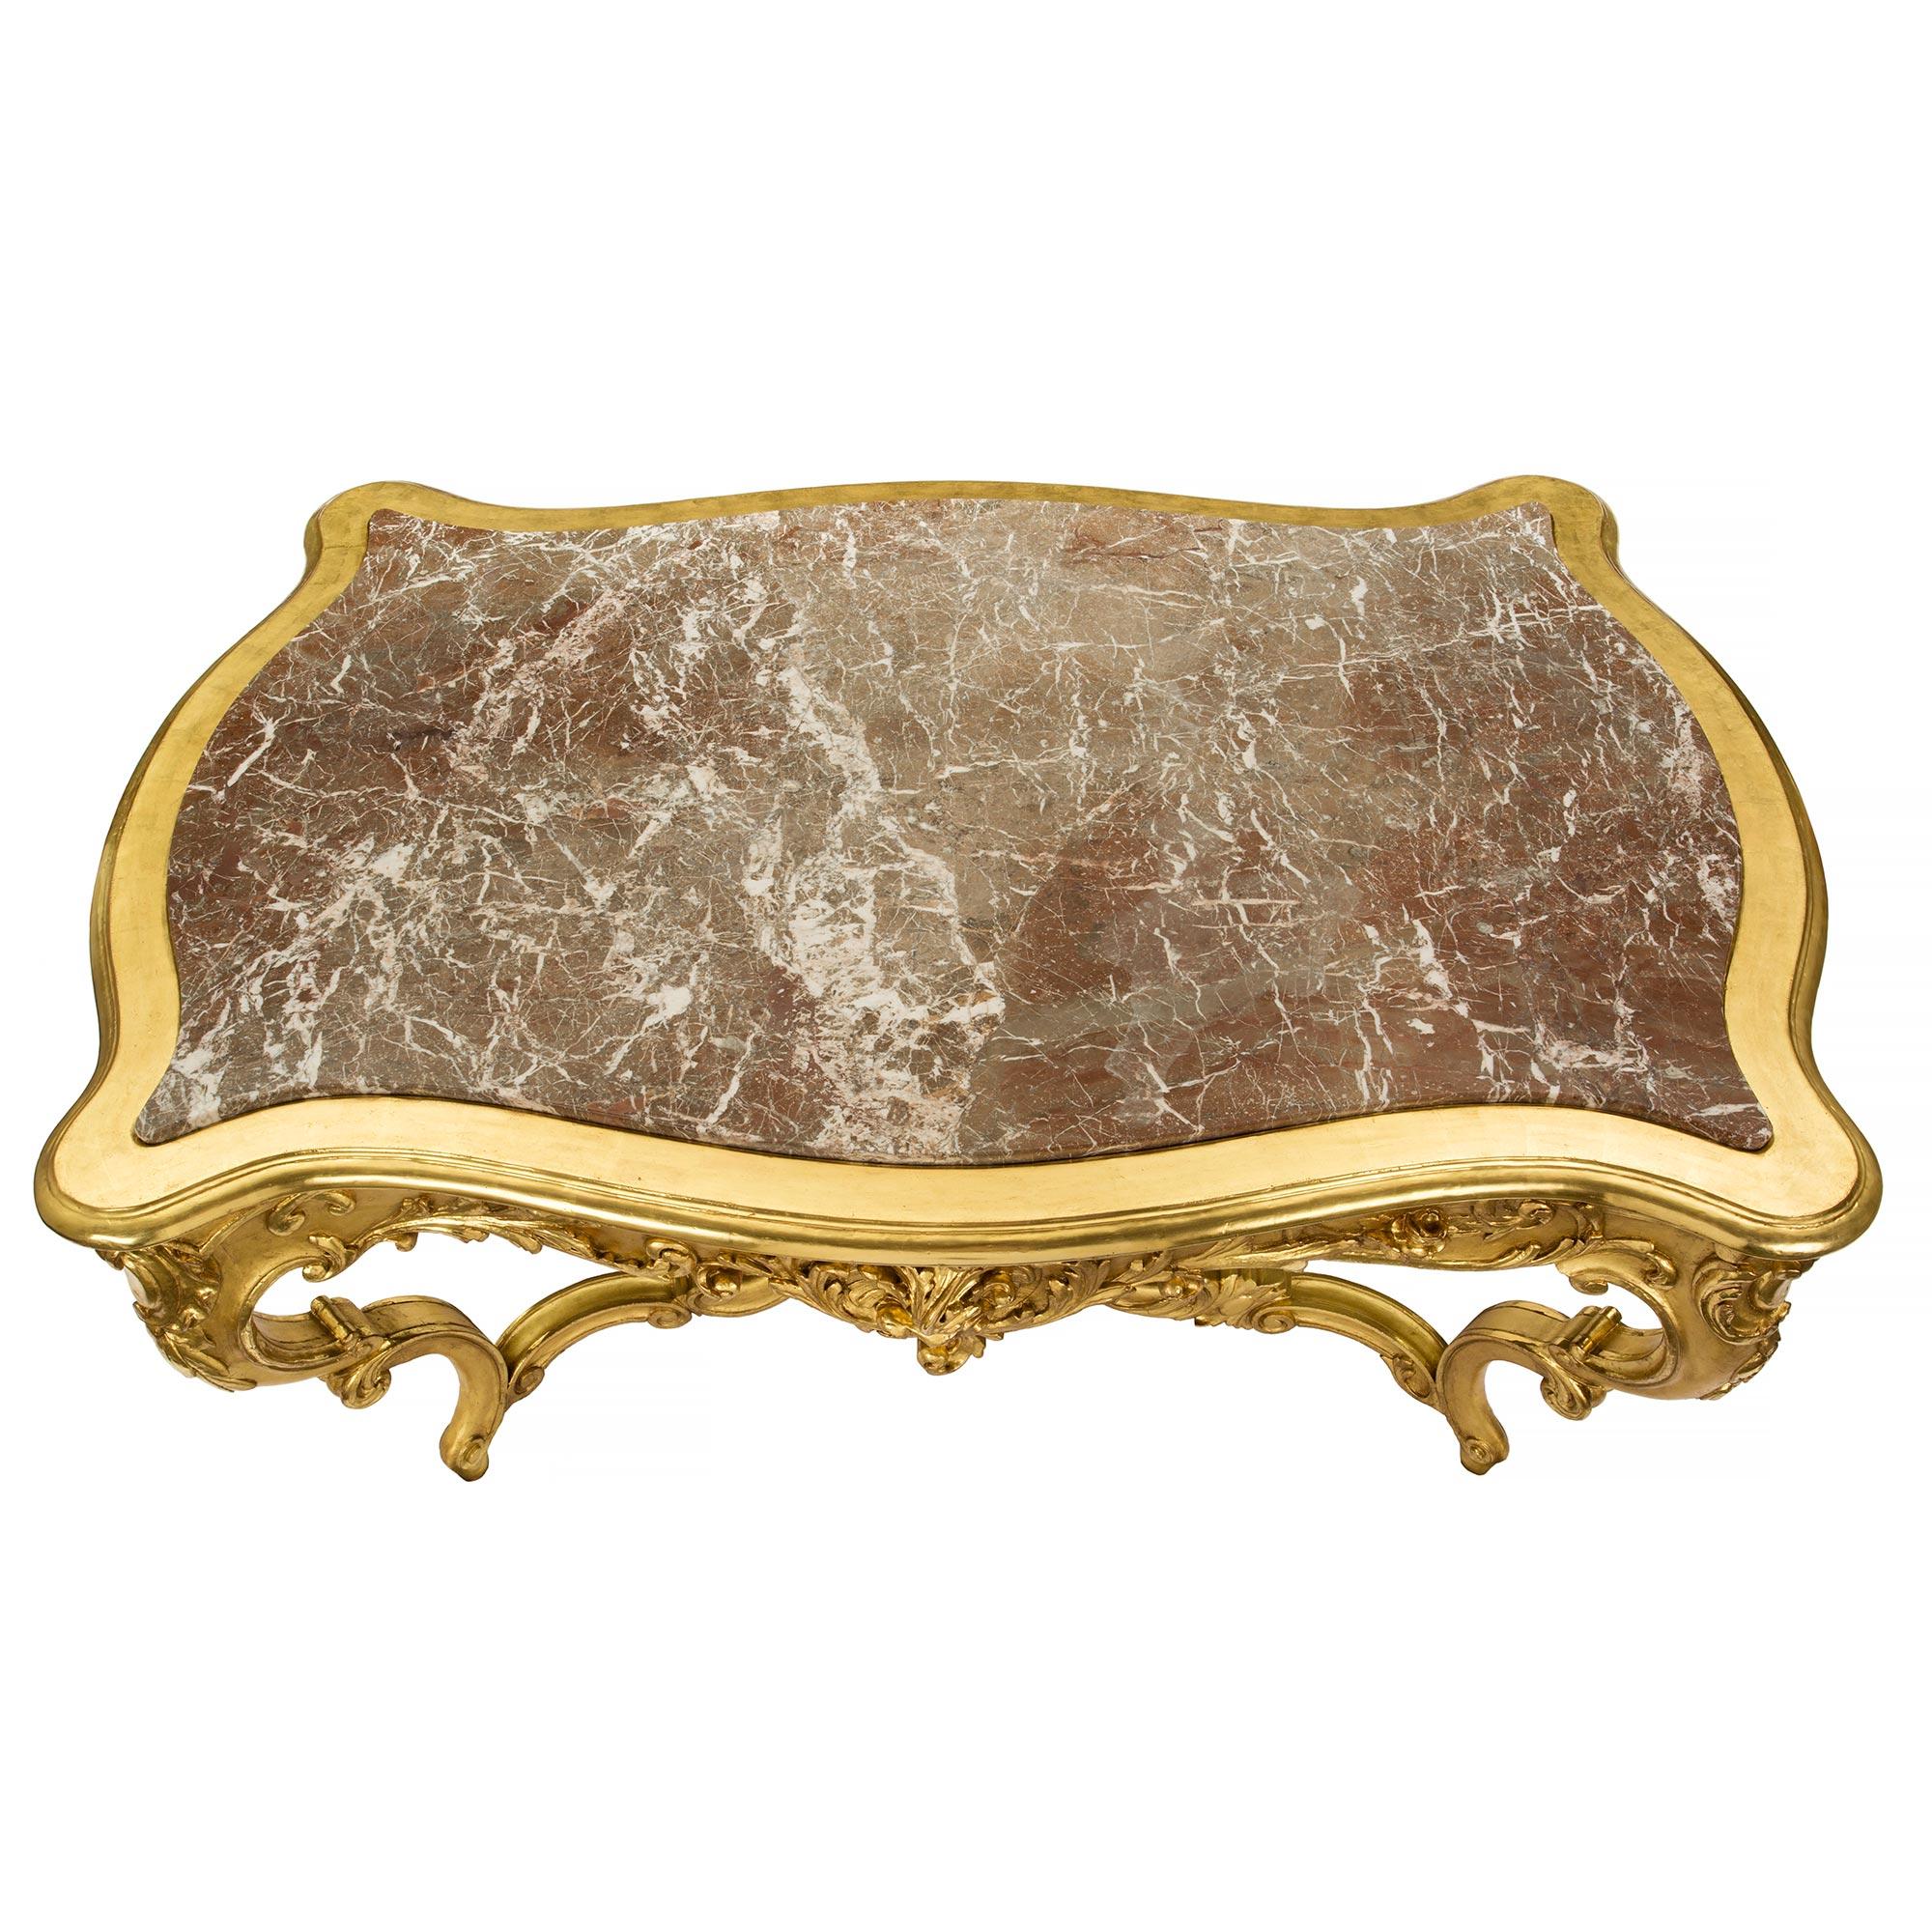 Eine sensationelle italienische 19. Jahrhundert Louis XV st. Vergoldung und Marmor Mitte Tisch mit einer Schublade. Der Tisch ruht auf außergewöhnlichen, geschwungenen Beinen mit Blattwerk und einer beeindruckenden, kunstvoll geschnitzten zentralen